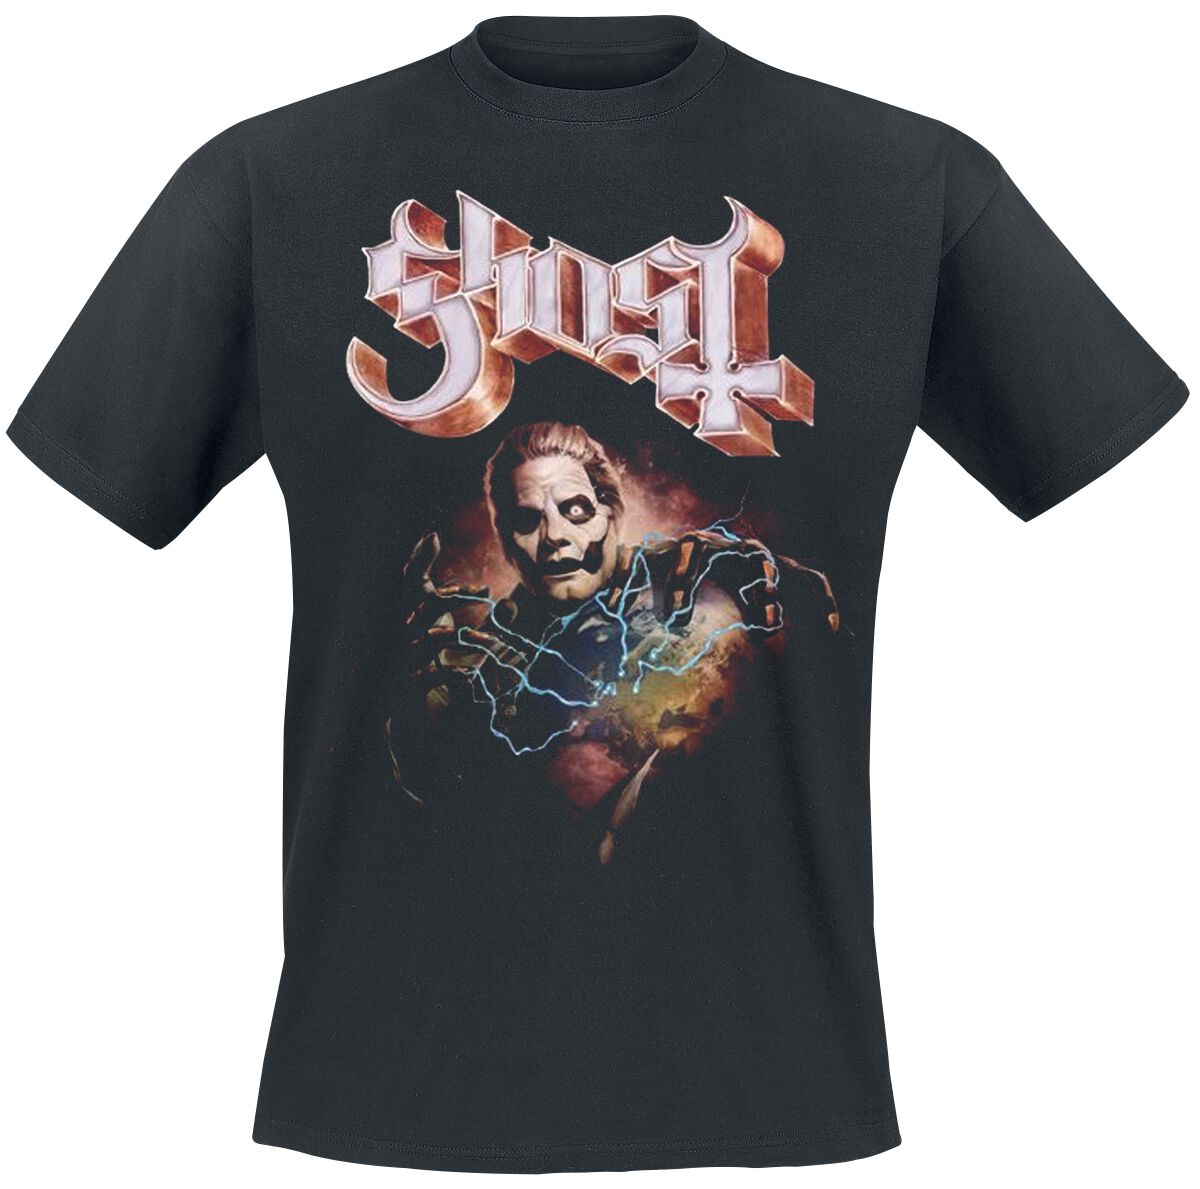 Ghost Europe 23 Admat Tour Shirt T-Shirt schwarz in XL